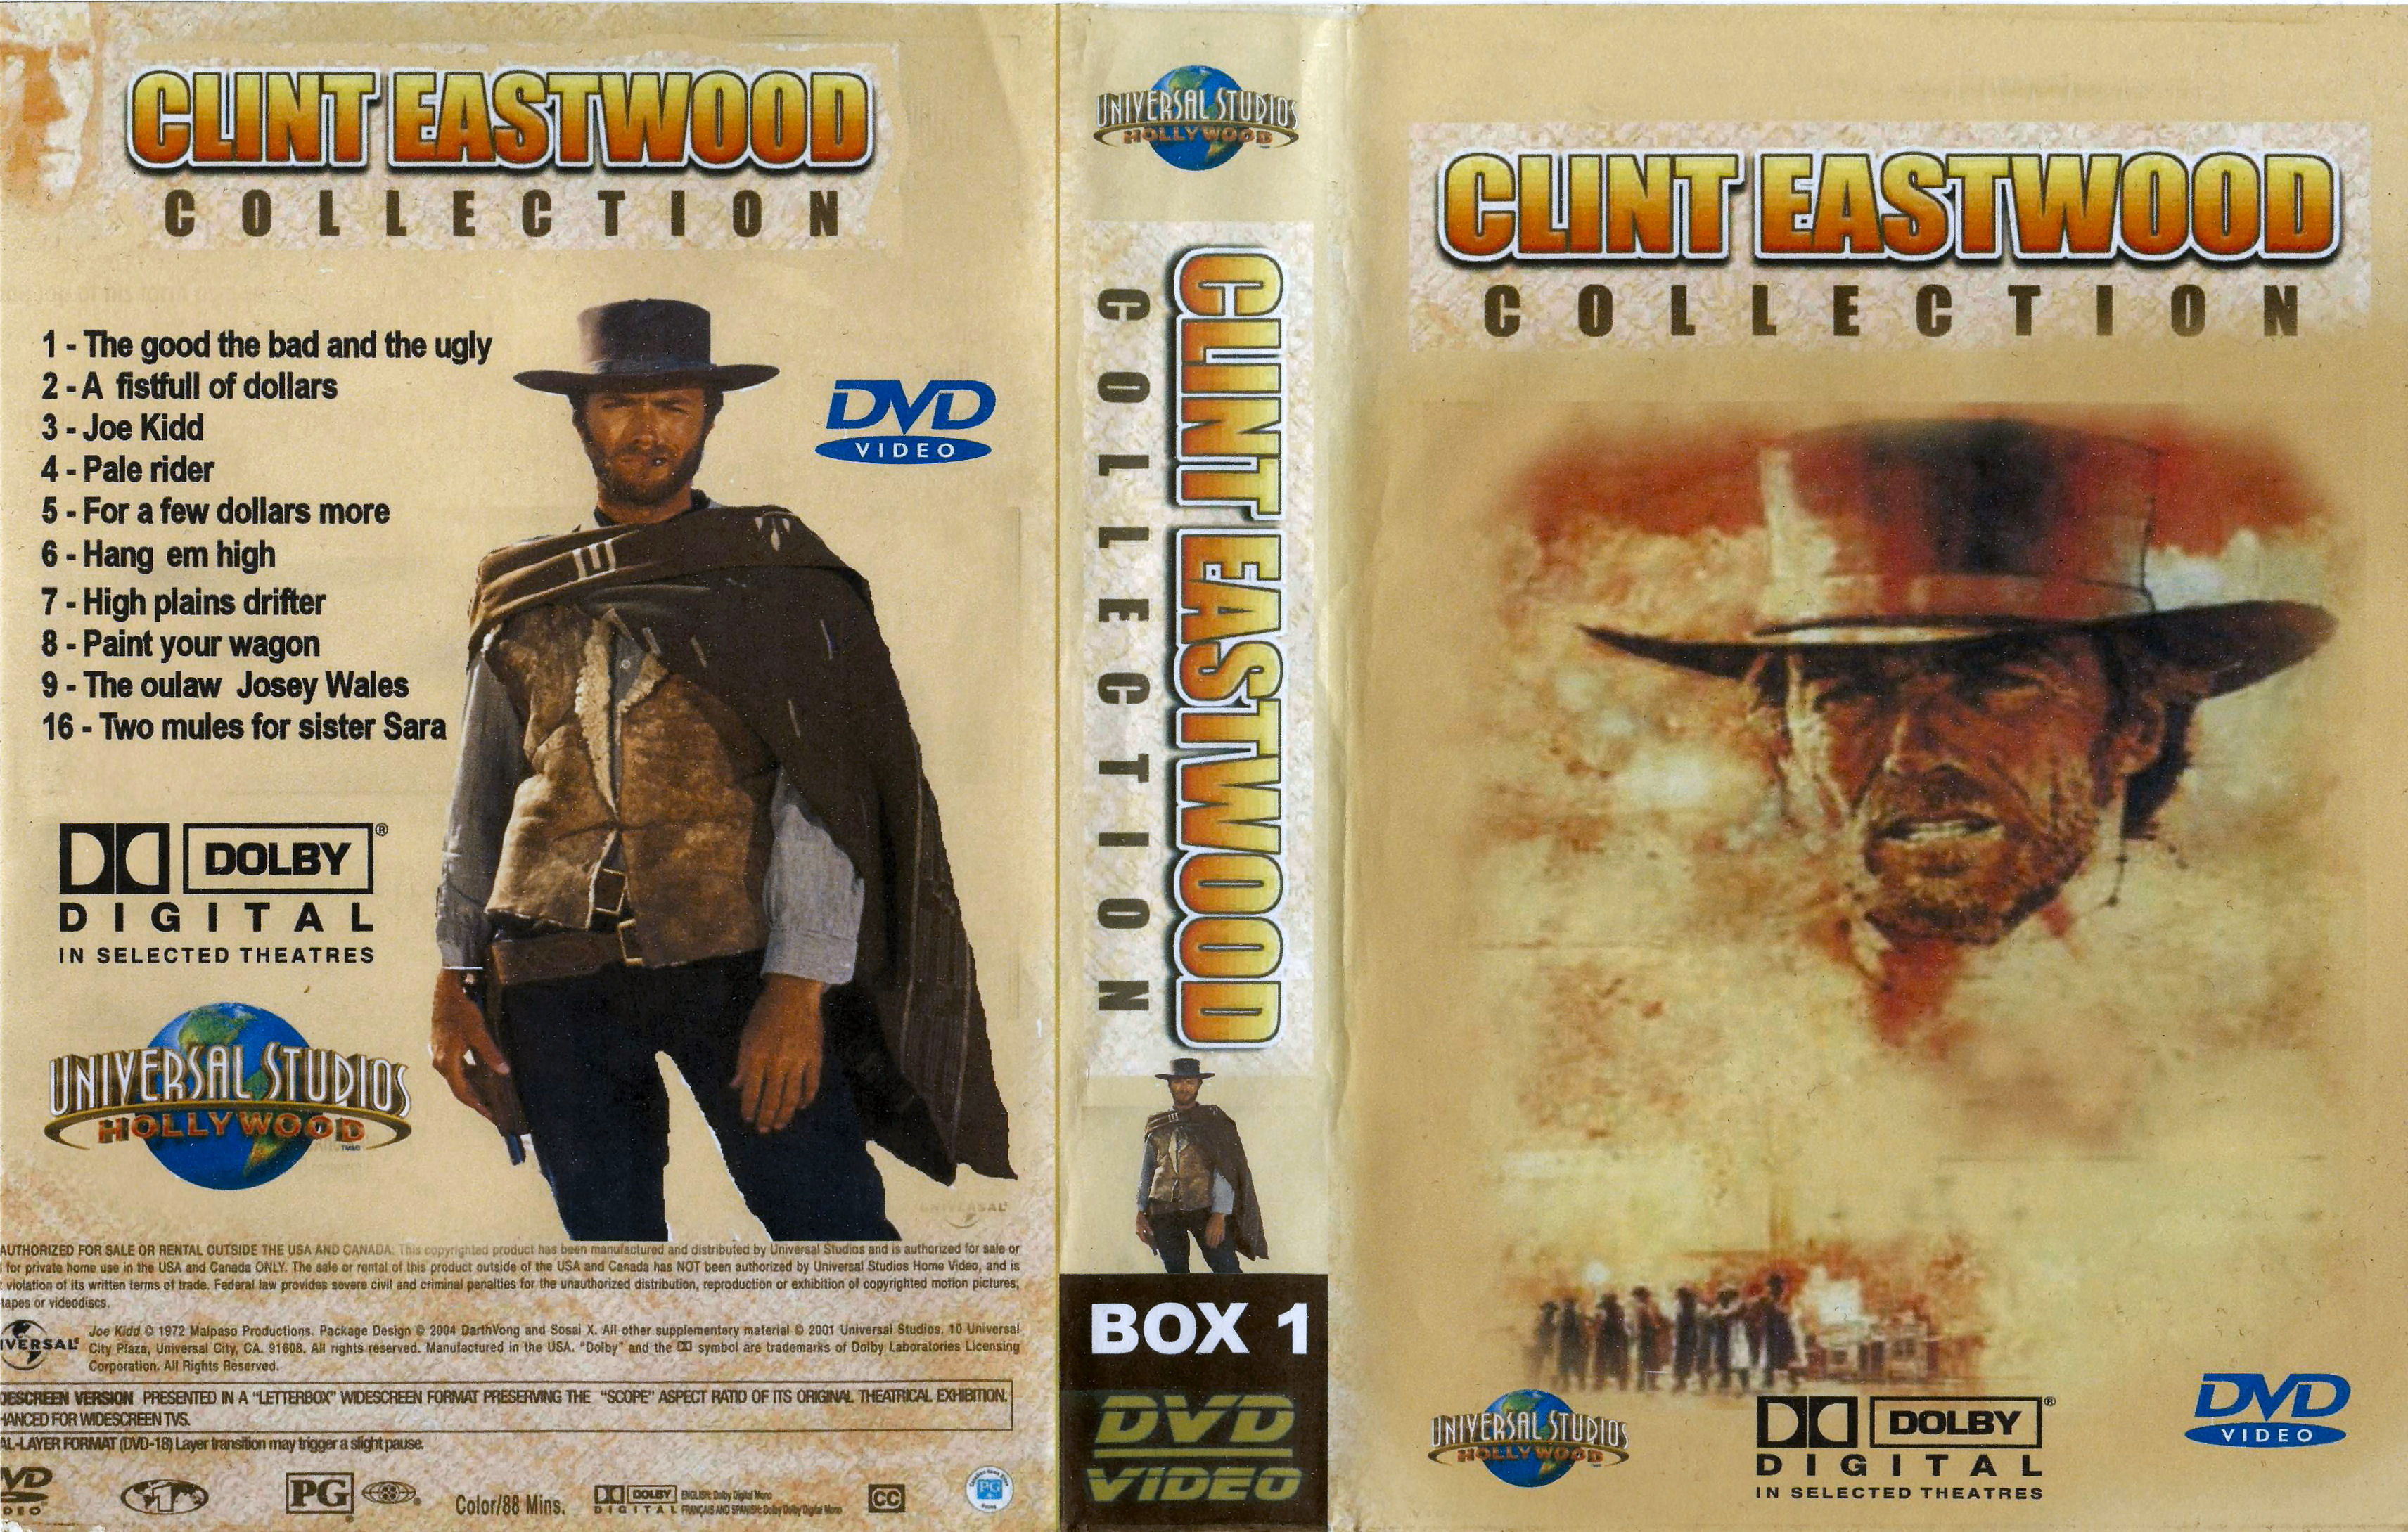 Clint Eastwood Collectie Box 1 DvD 10 van 10